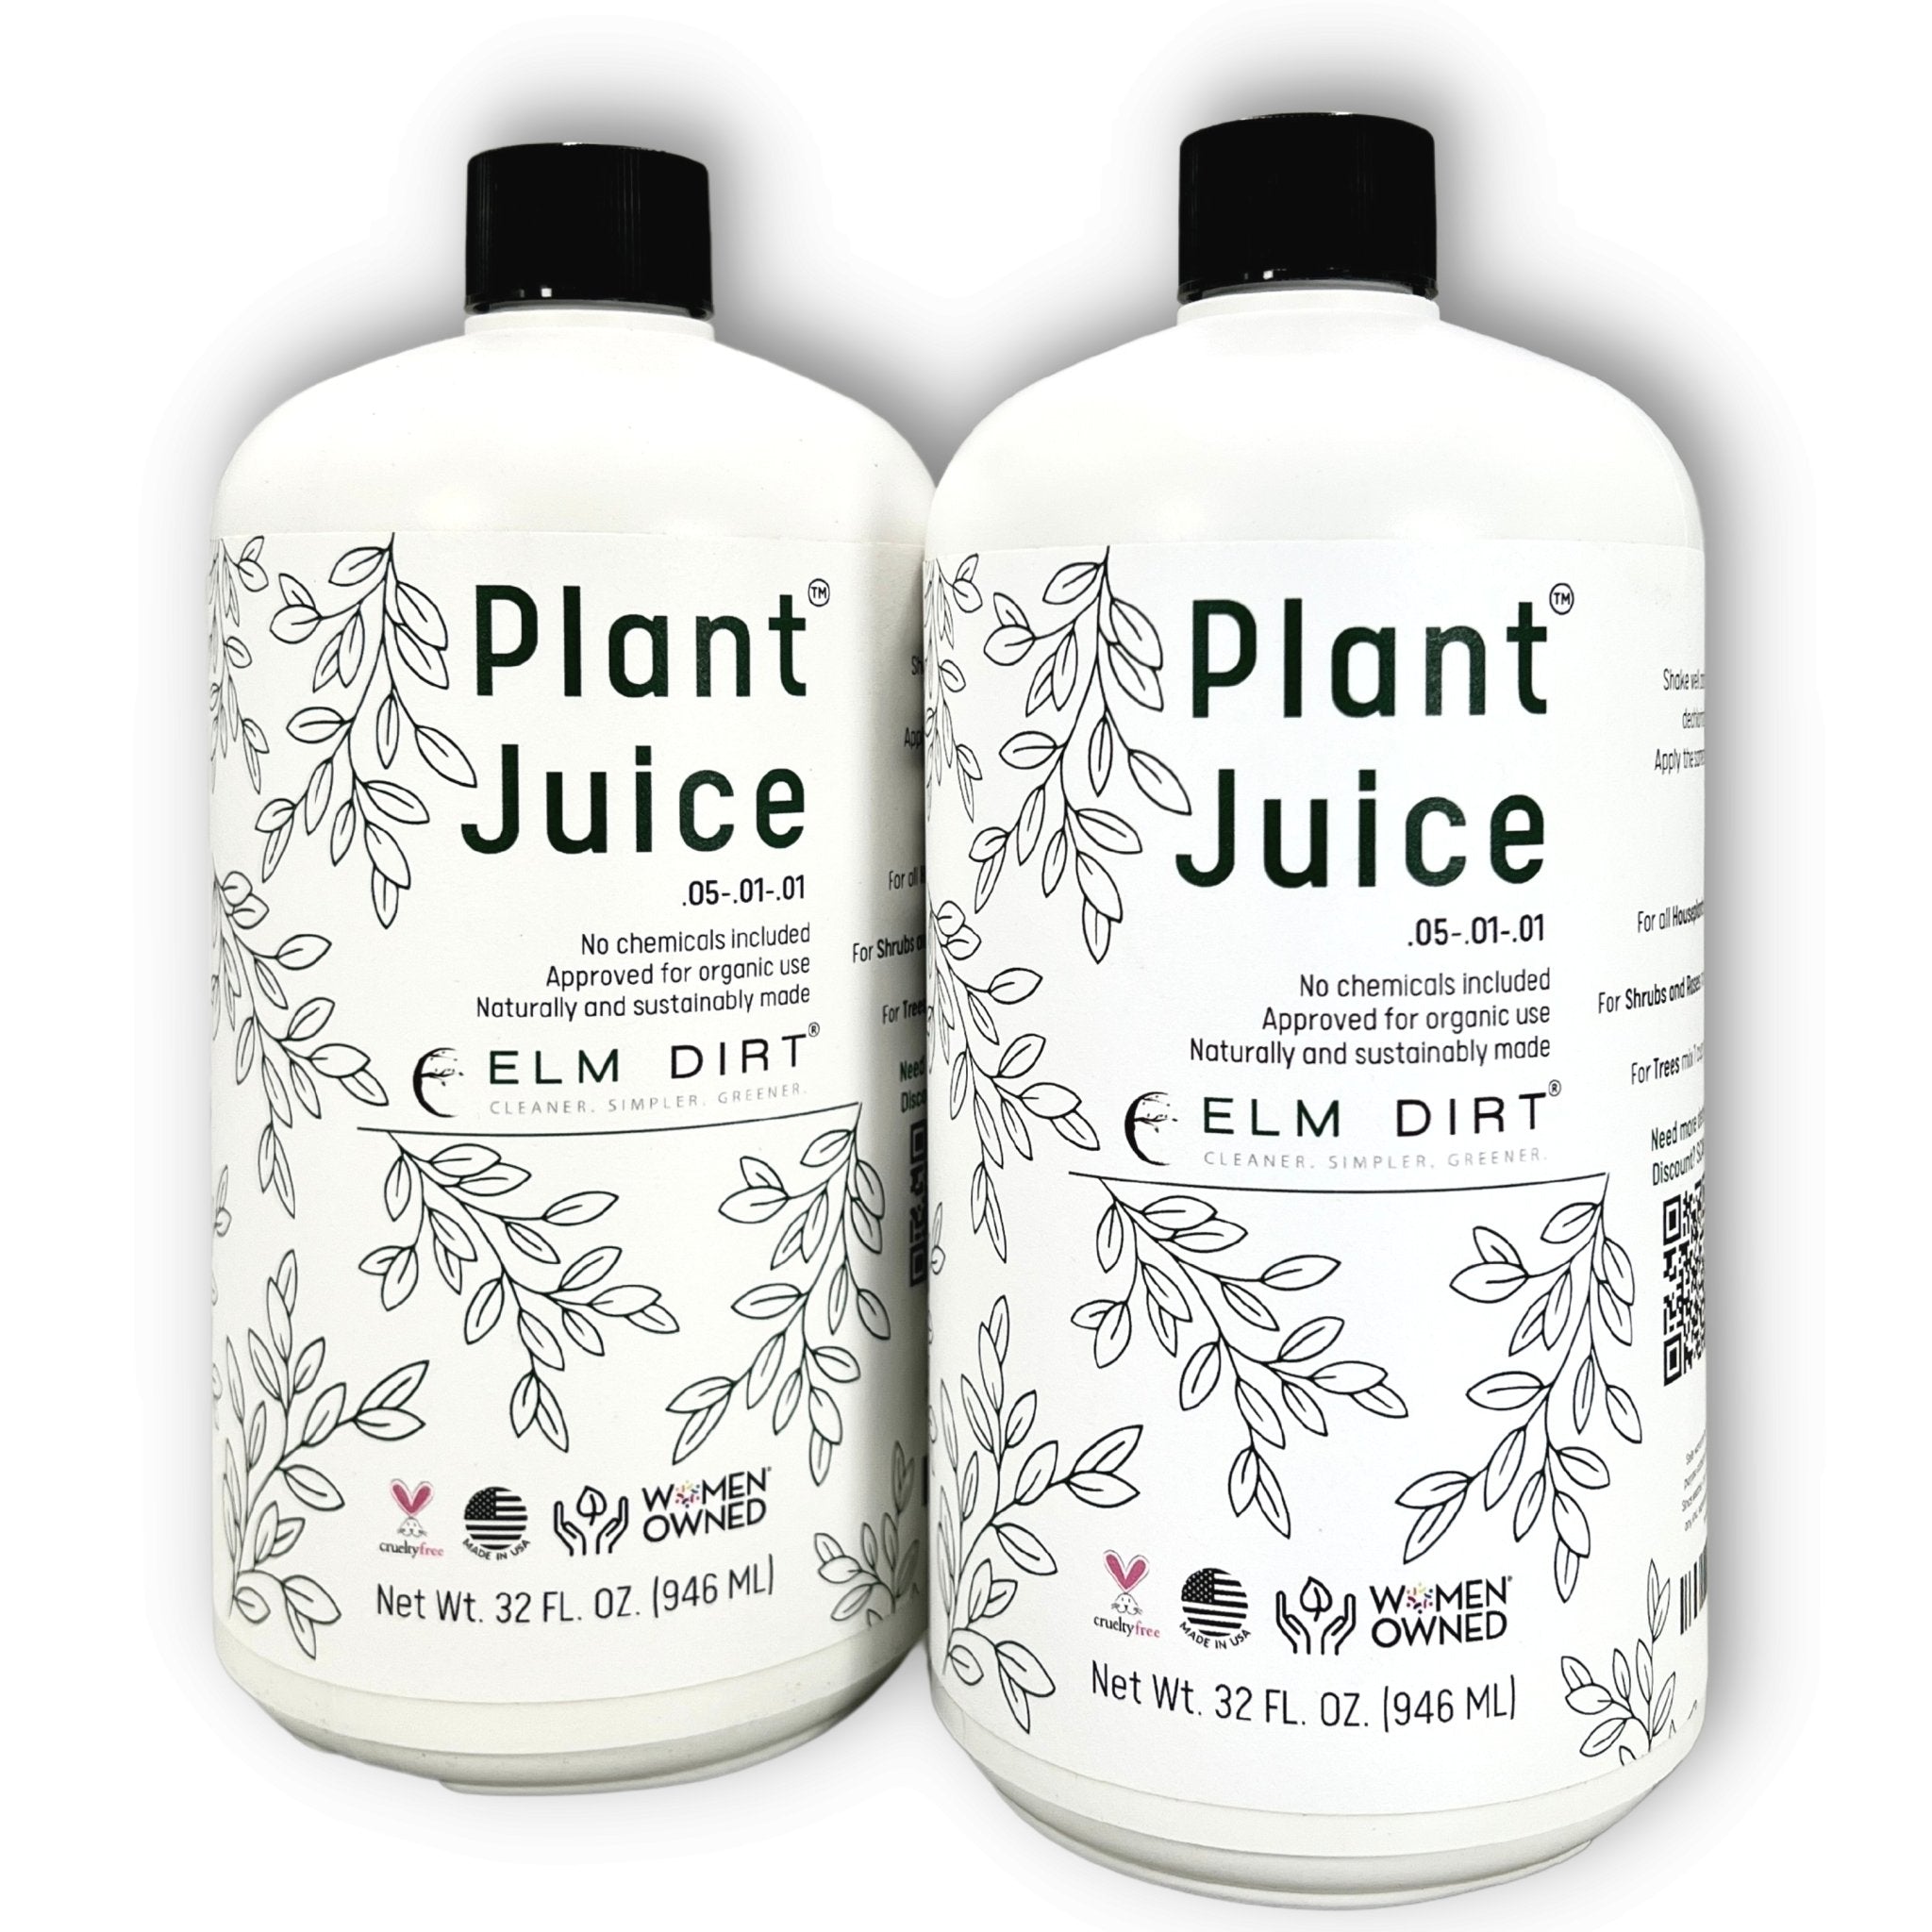 Plant Juice by Elm Dirt